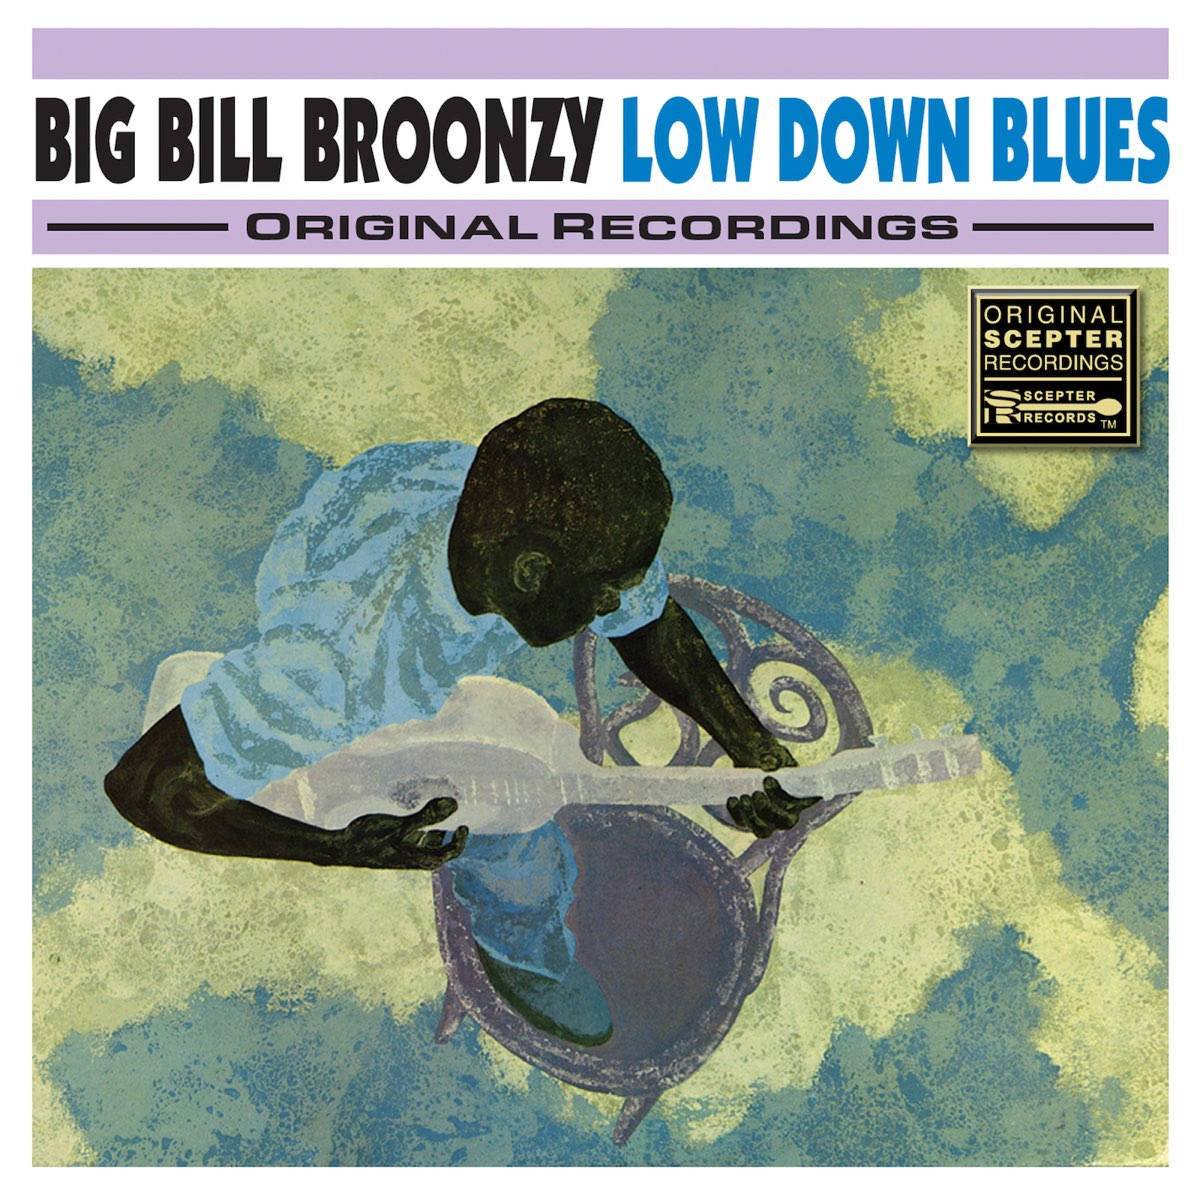 Storbill Broonzy Low Down Blues. Wallpaper